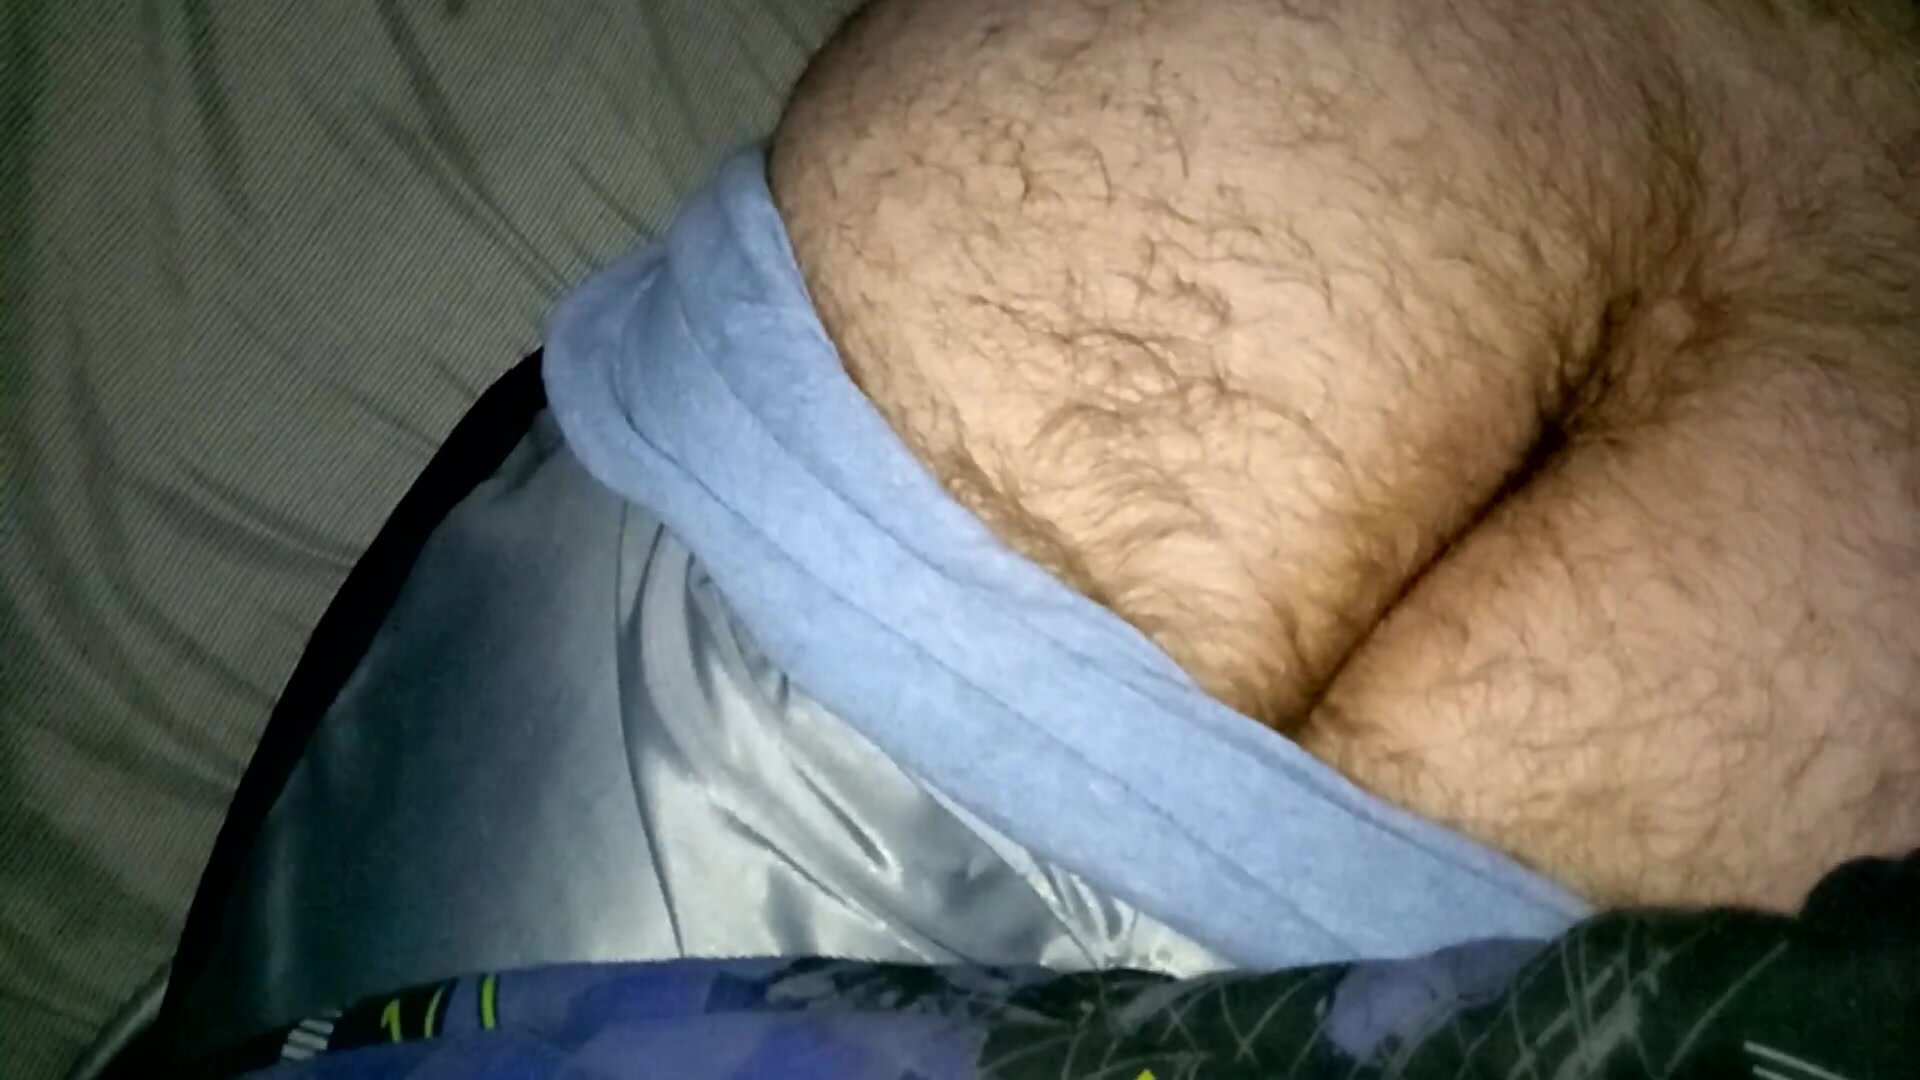 Cum on sleeping boyfriend's fat ass